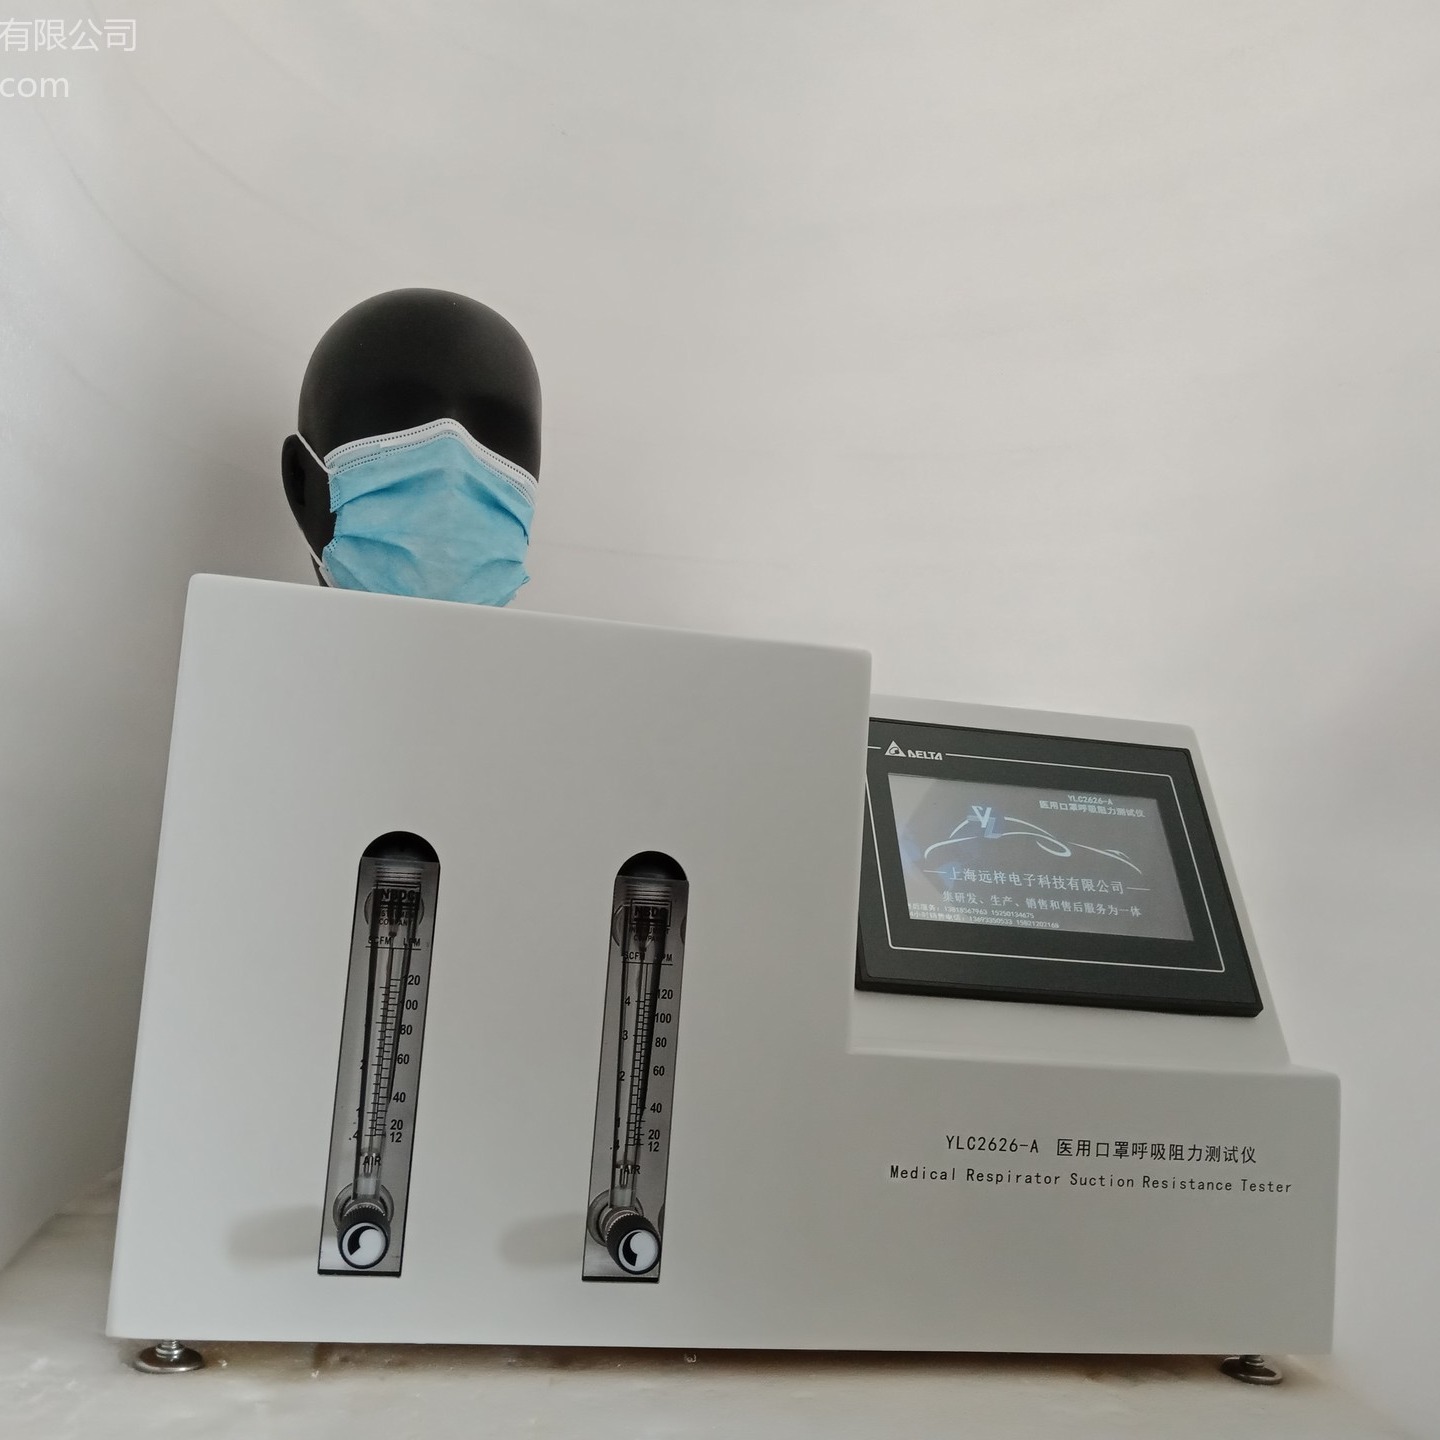 口罩阻力测试仪HXZ2626-A 医用外科口罩气流阻力测试仪 呼吸阻力测试仪 上海远梓图片